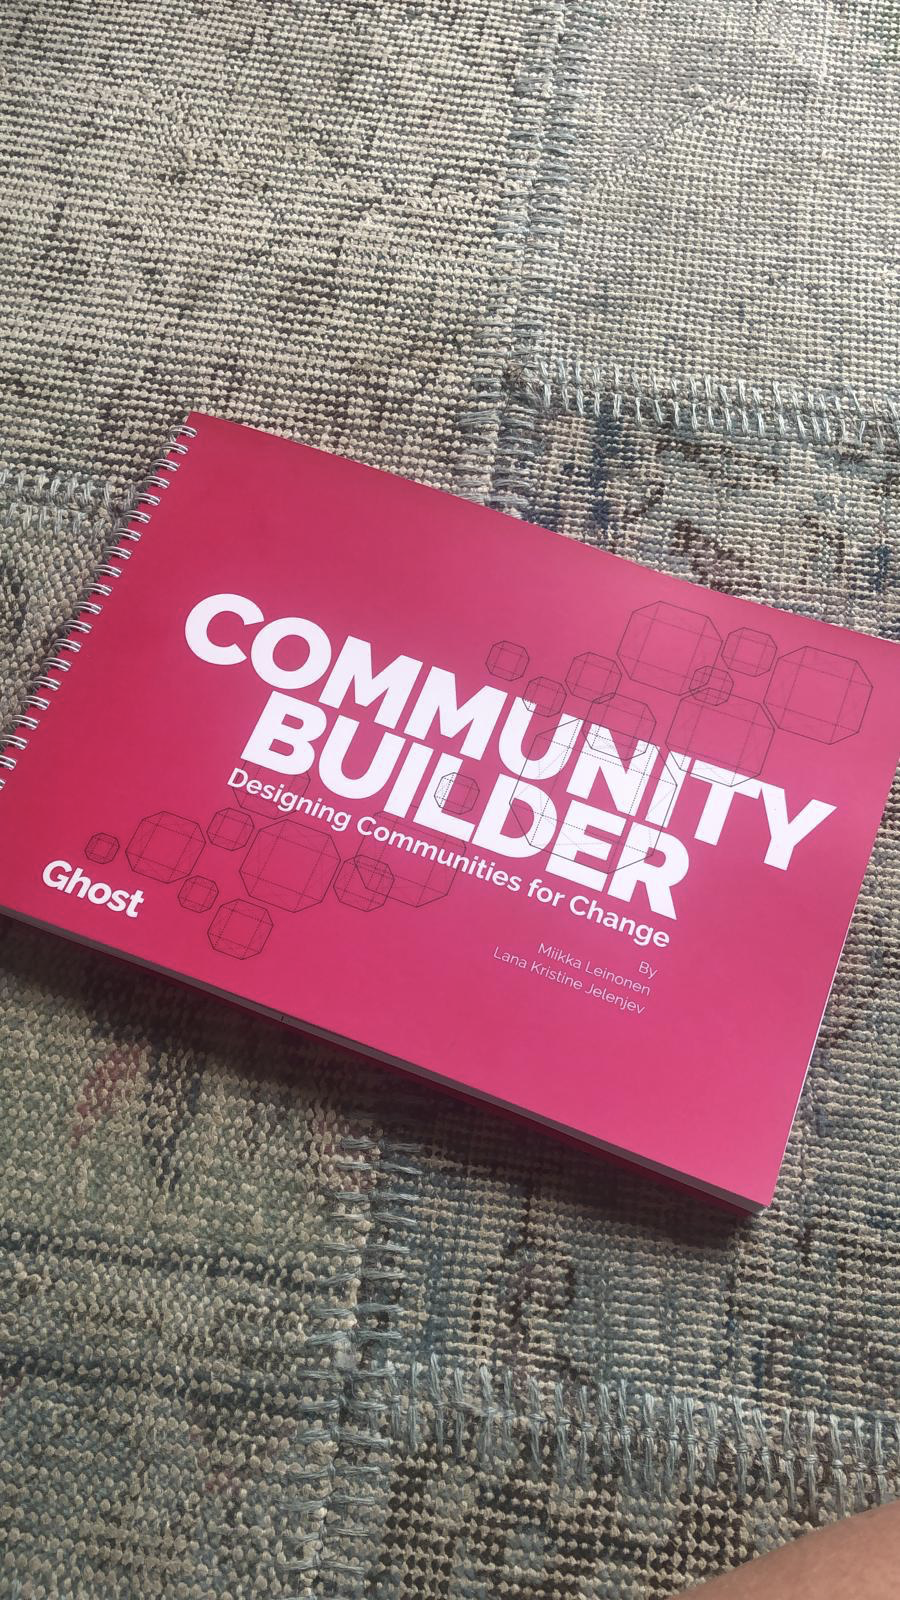 Community Builder - The Book - Fancy Wirebound Edition